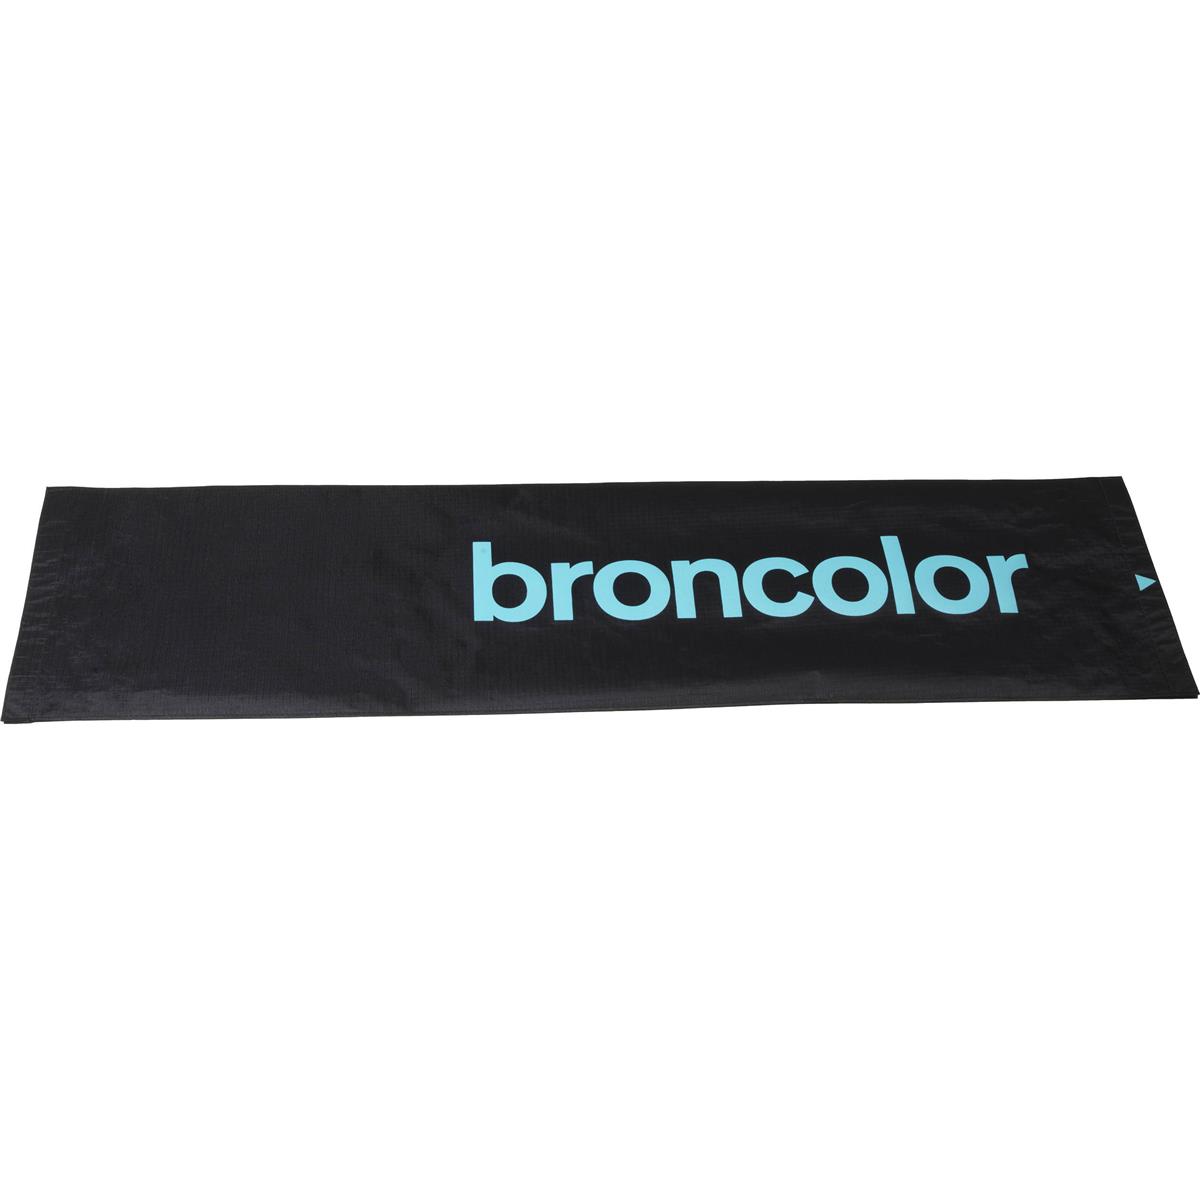 Image of Broncolor Reflector Foil for Litepipe